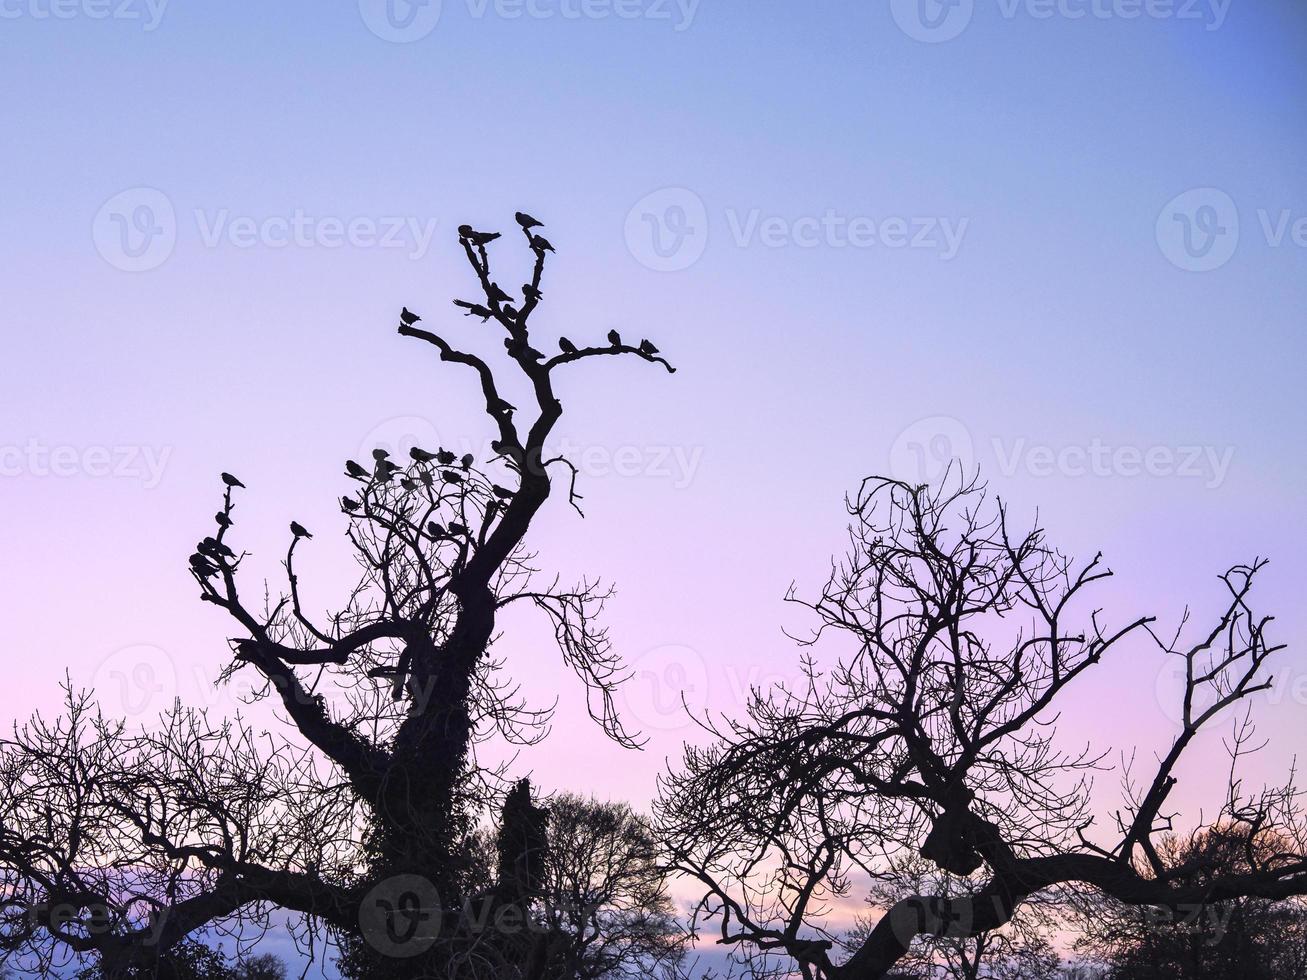 Palomas descansando sobre las ramas de los árboles desnudos en silueta contra un cielo rosa foto